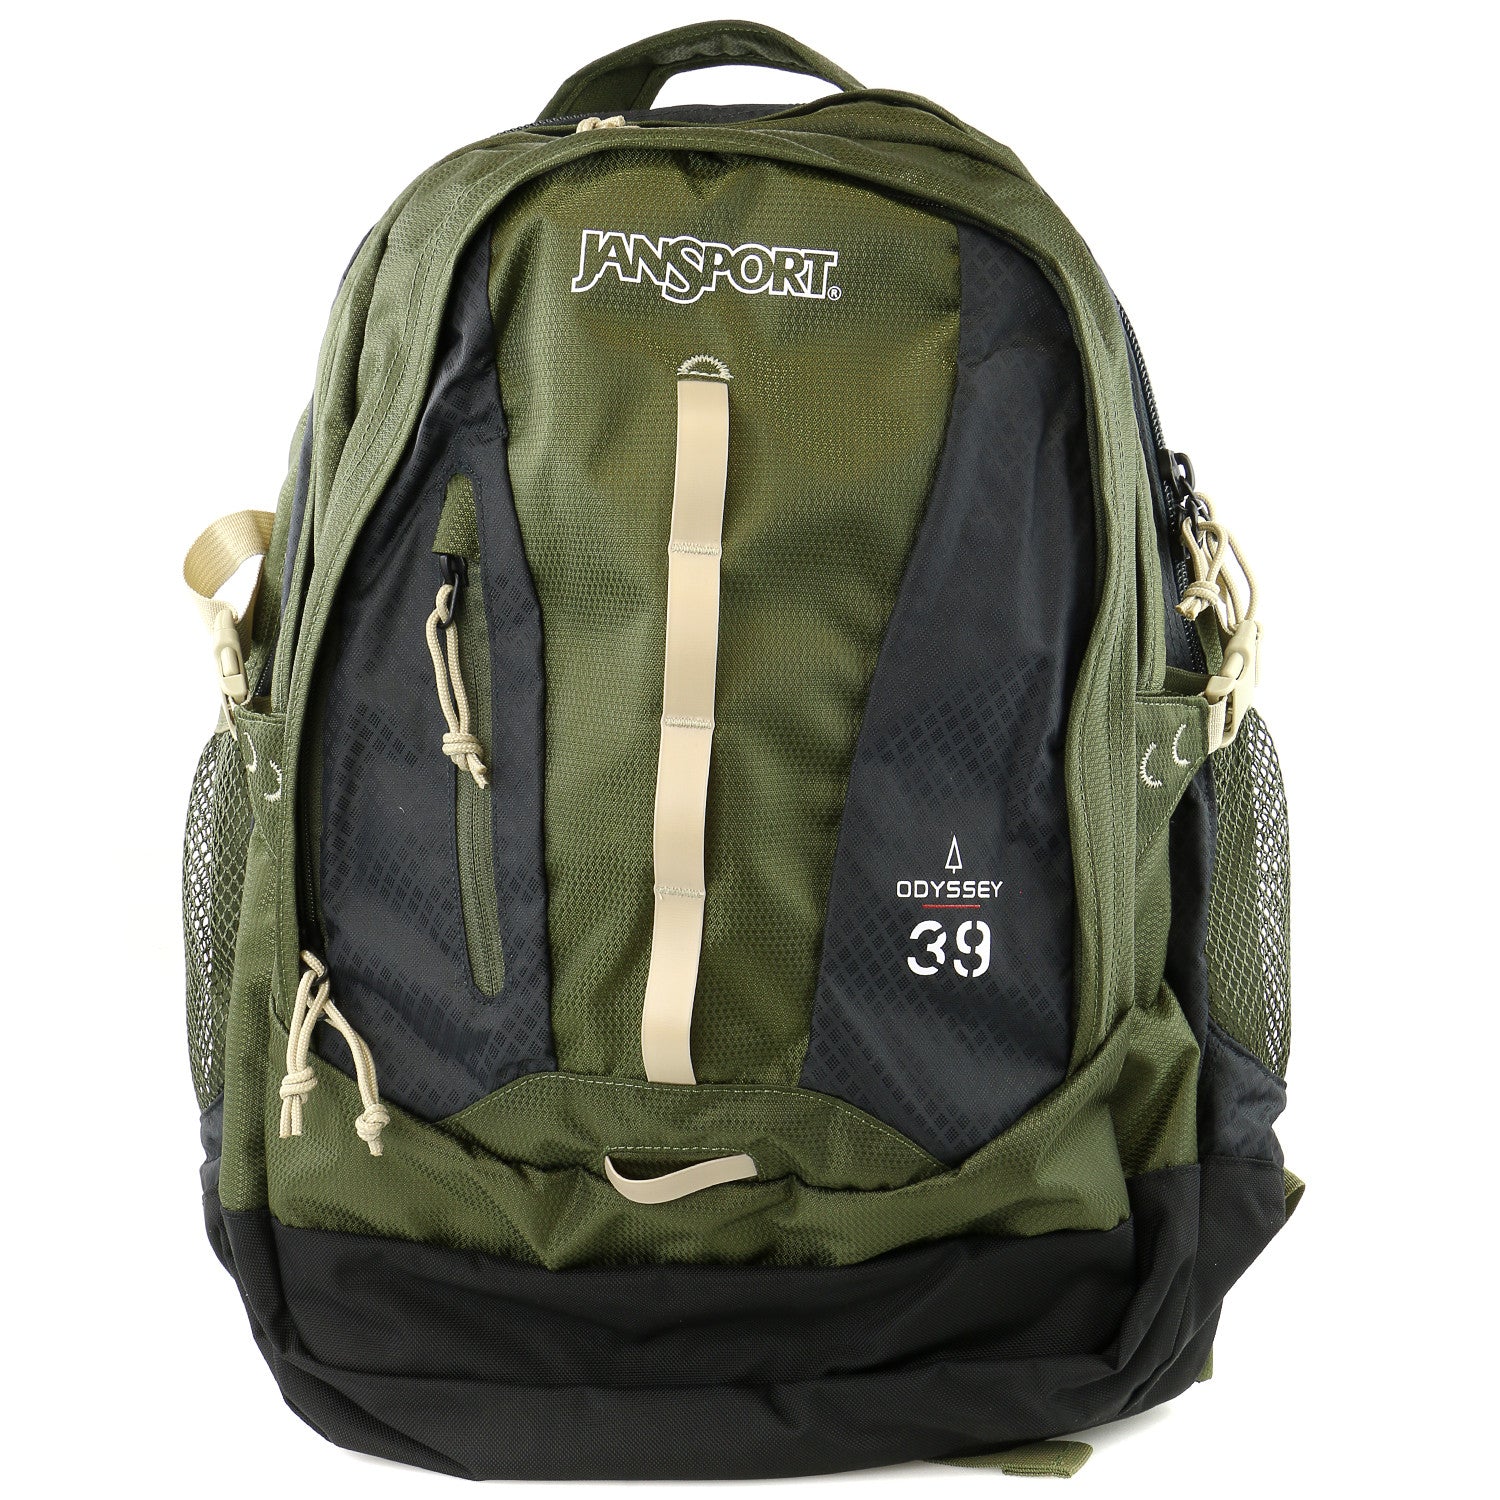 jansport odyssey 38 backpack